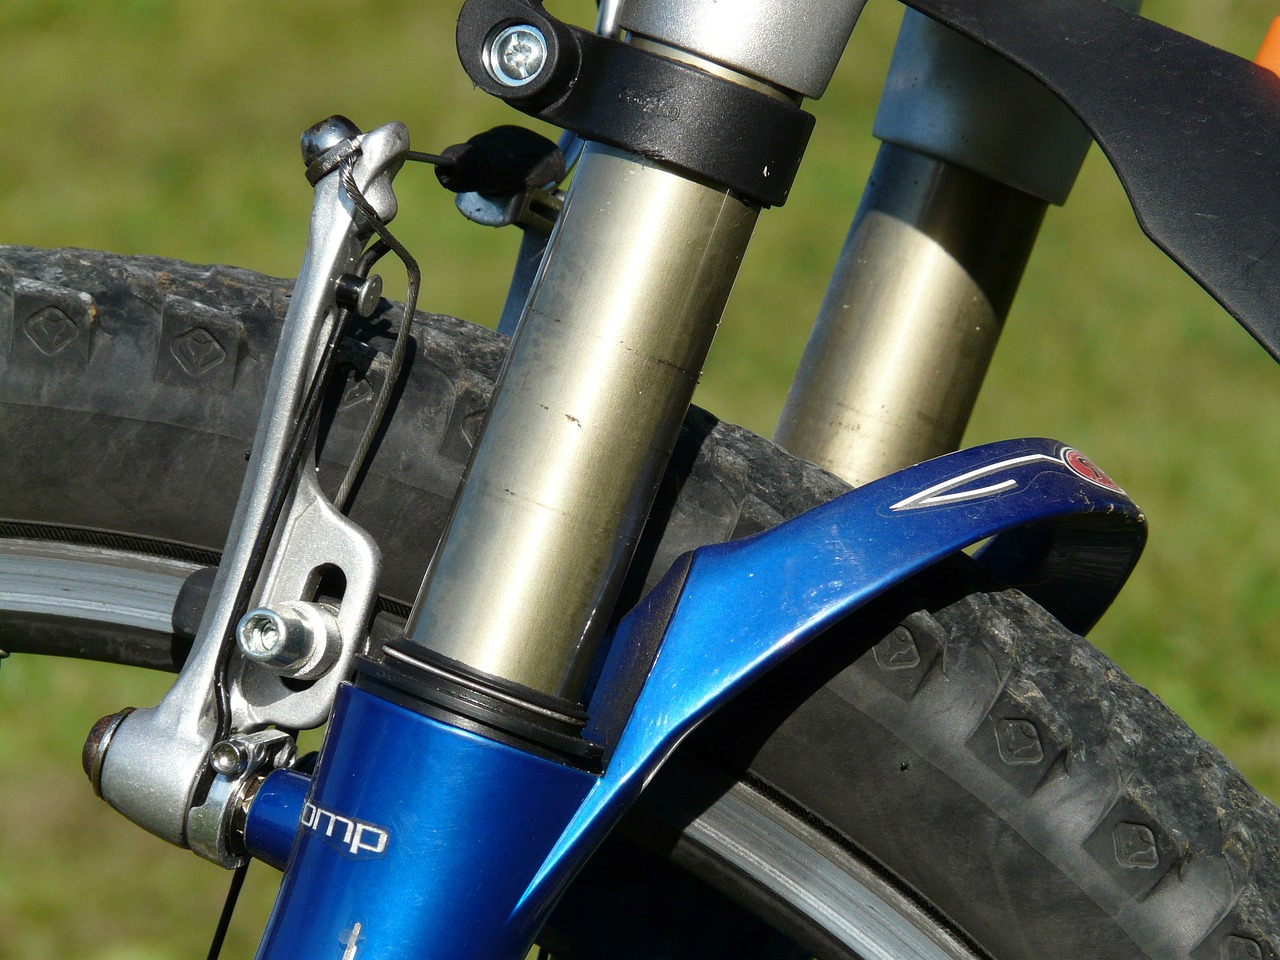 Garfo de suspensão de bicicleta - Fonte: Pixabay.